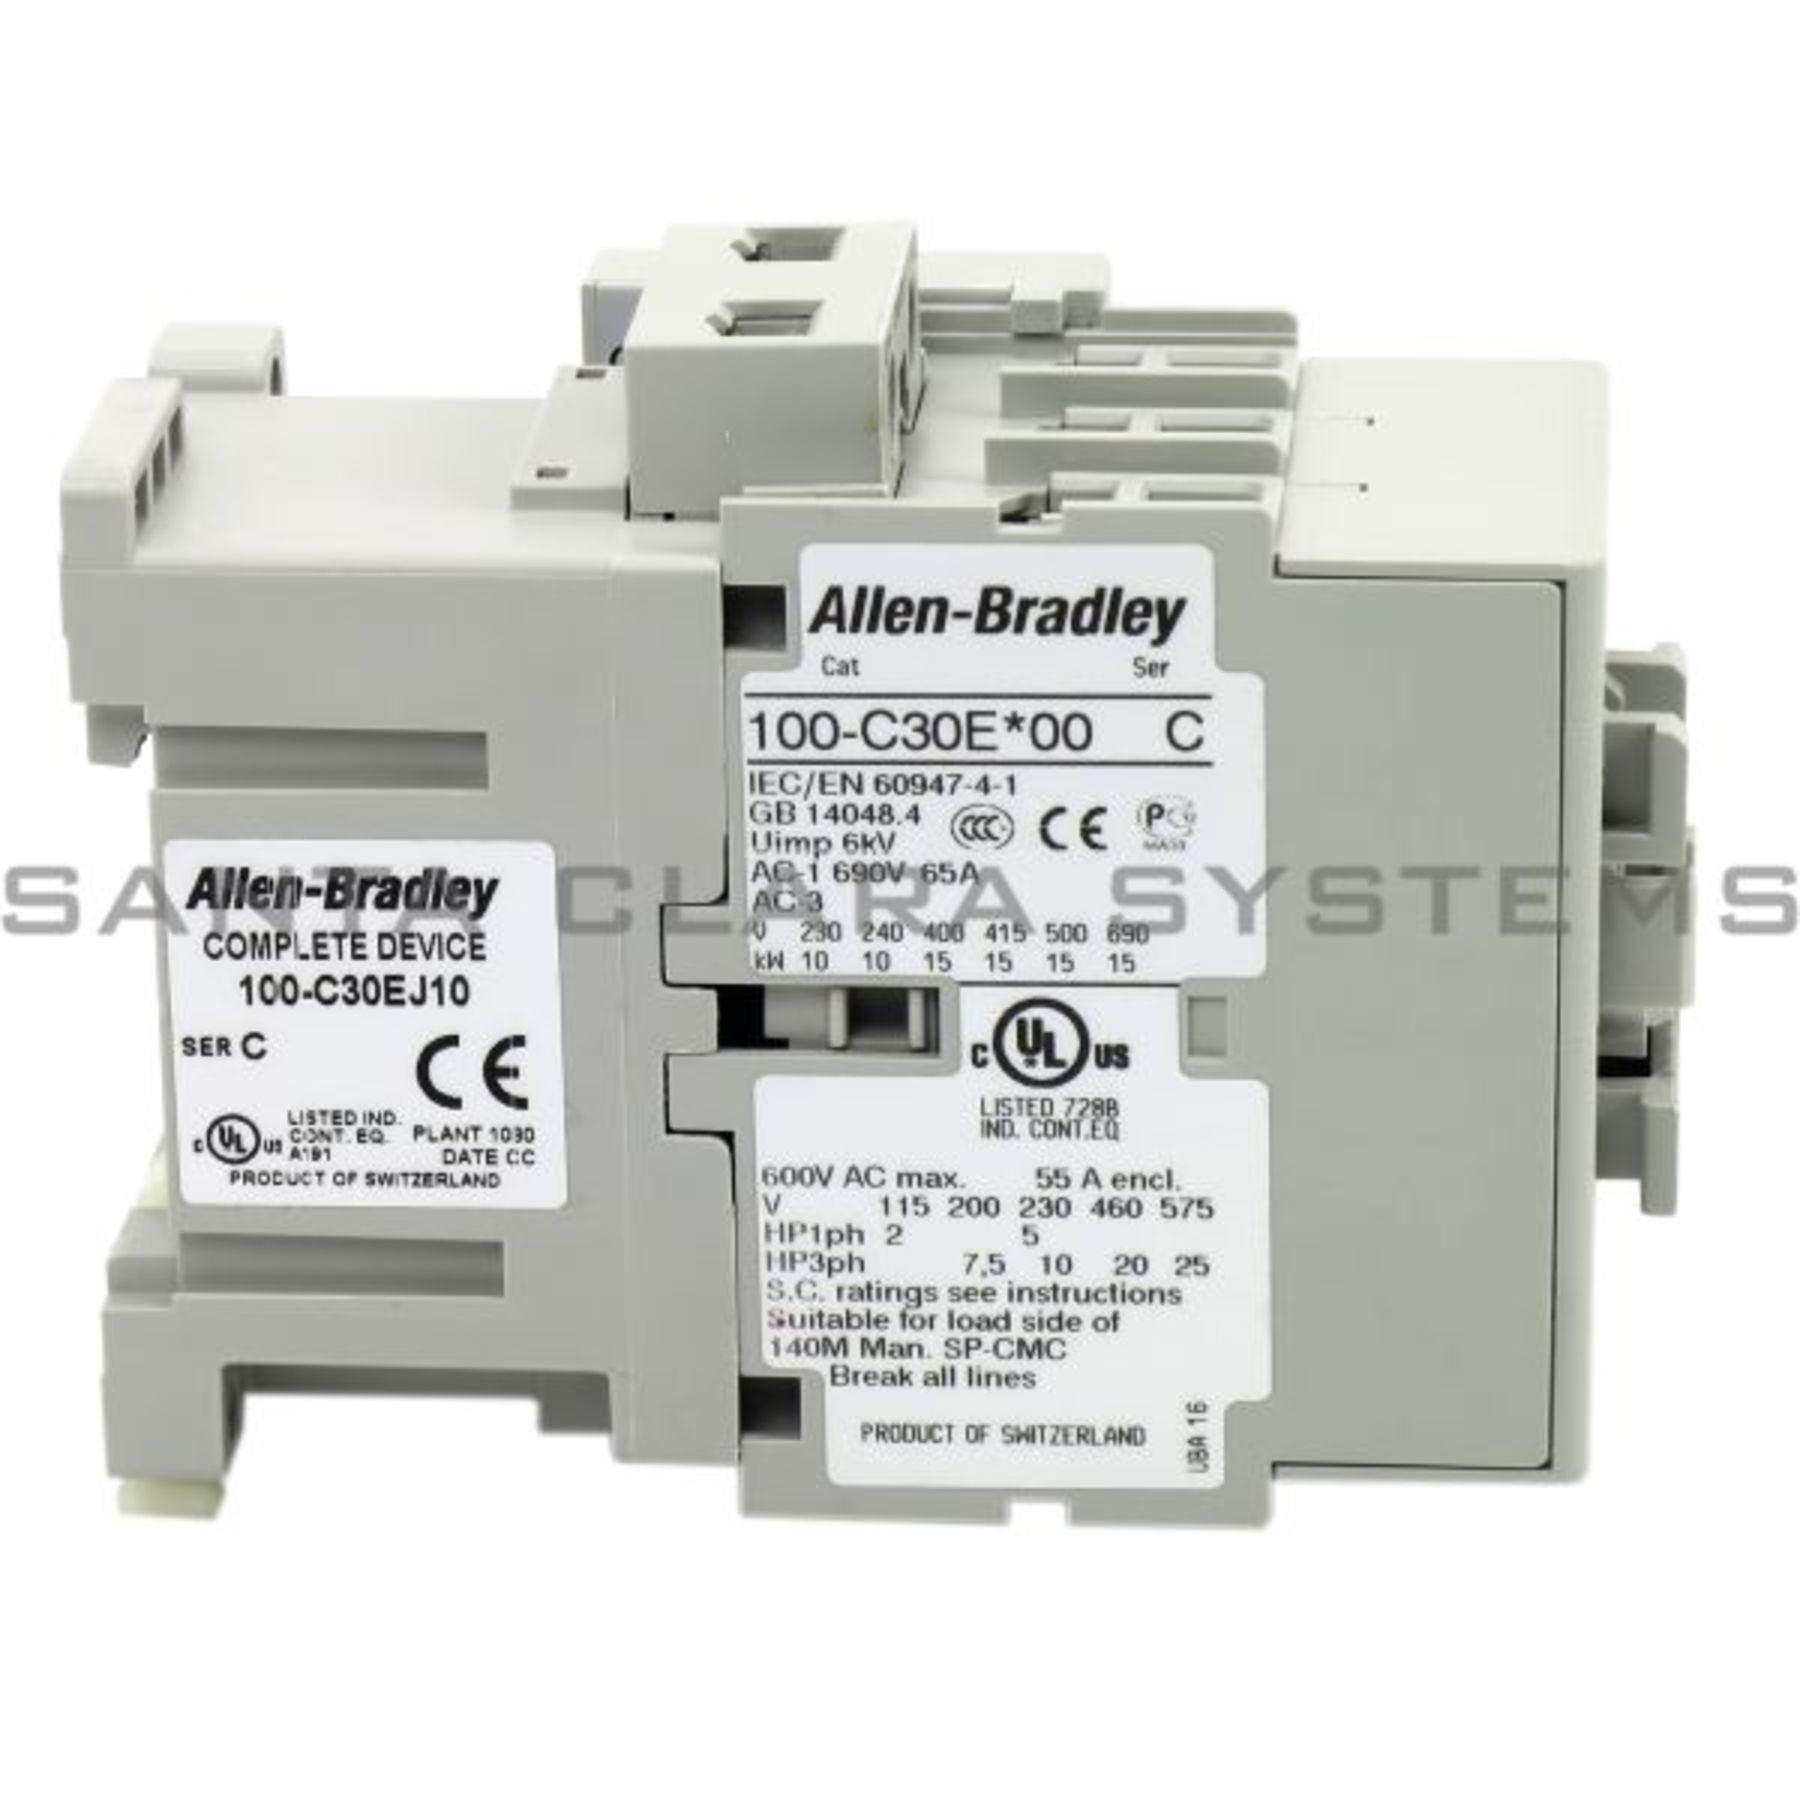 Allen-Bradley 100-C30Z-00 Contactor at Rs 1000